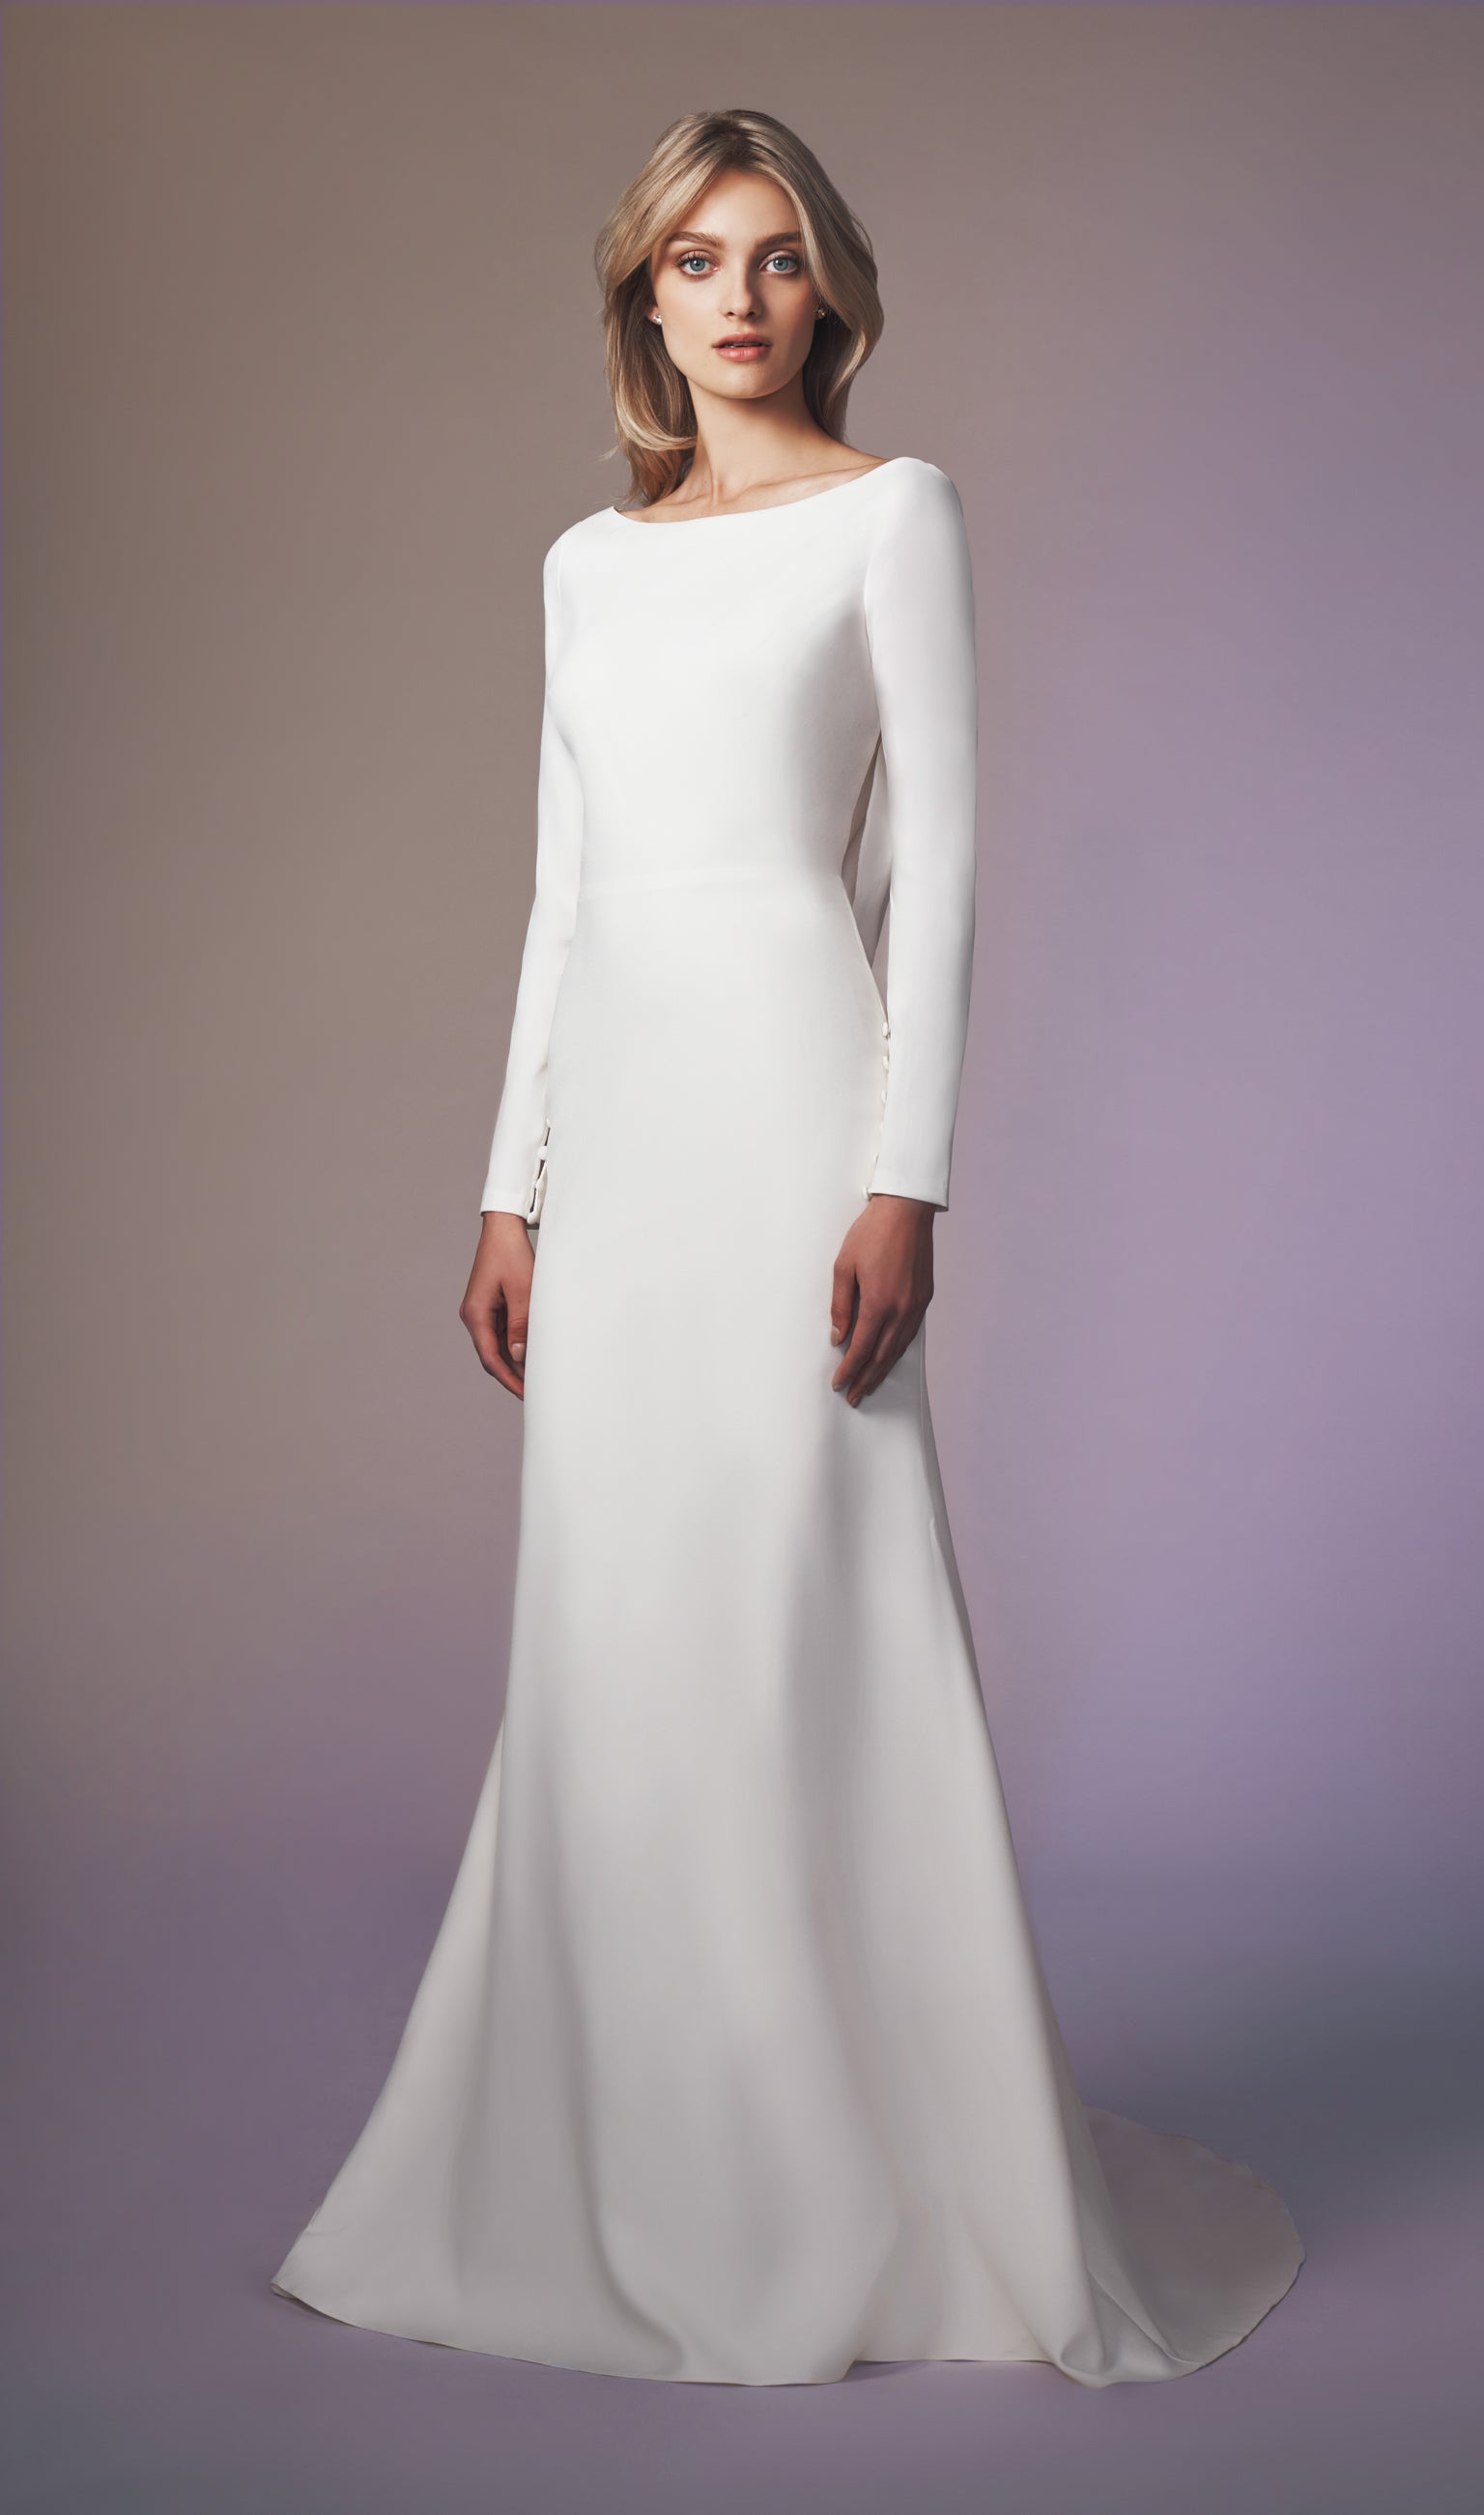 anne barge — Bustle: Designer sample wedding dresses and gowns - Blog